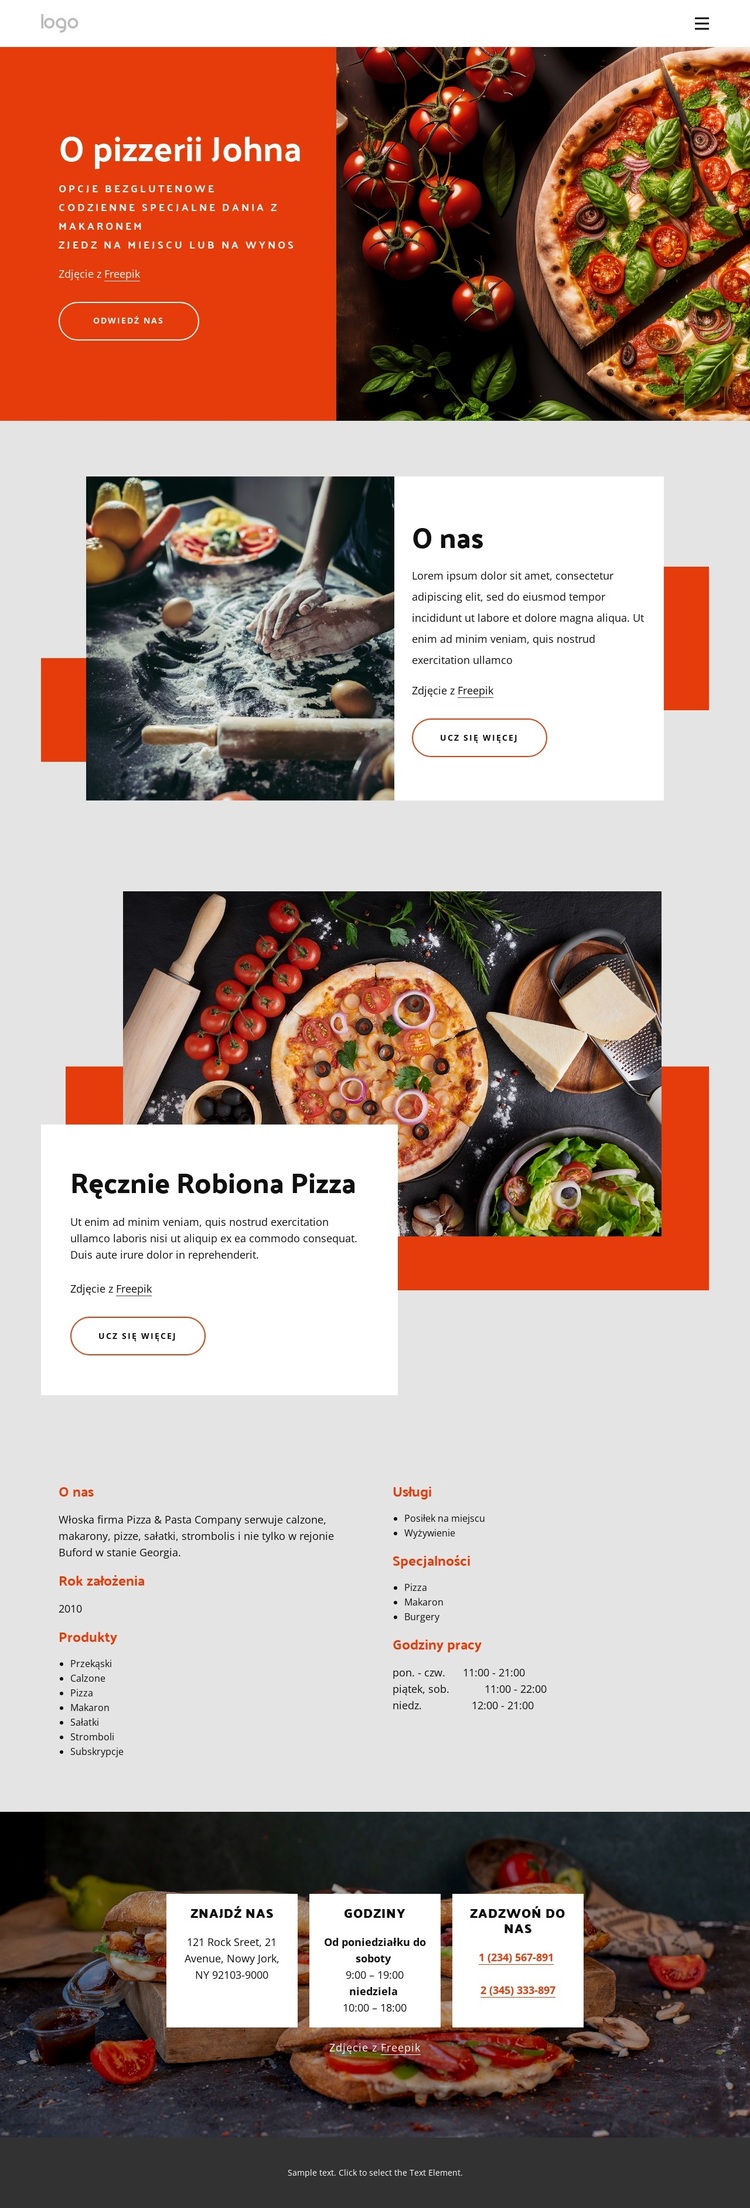 O naszej pizzerii Motyw WordPress